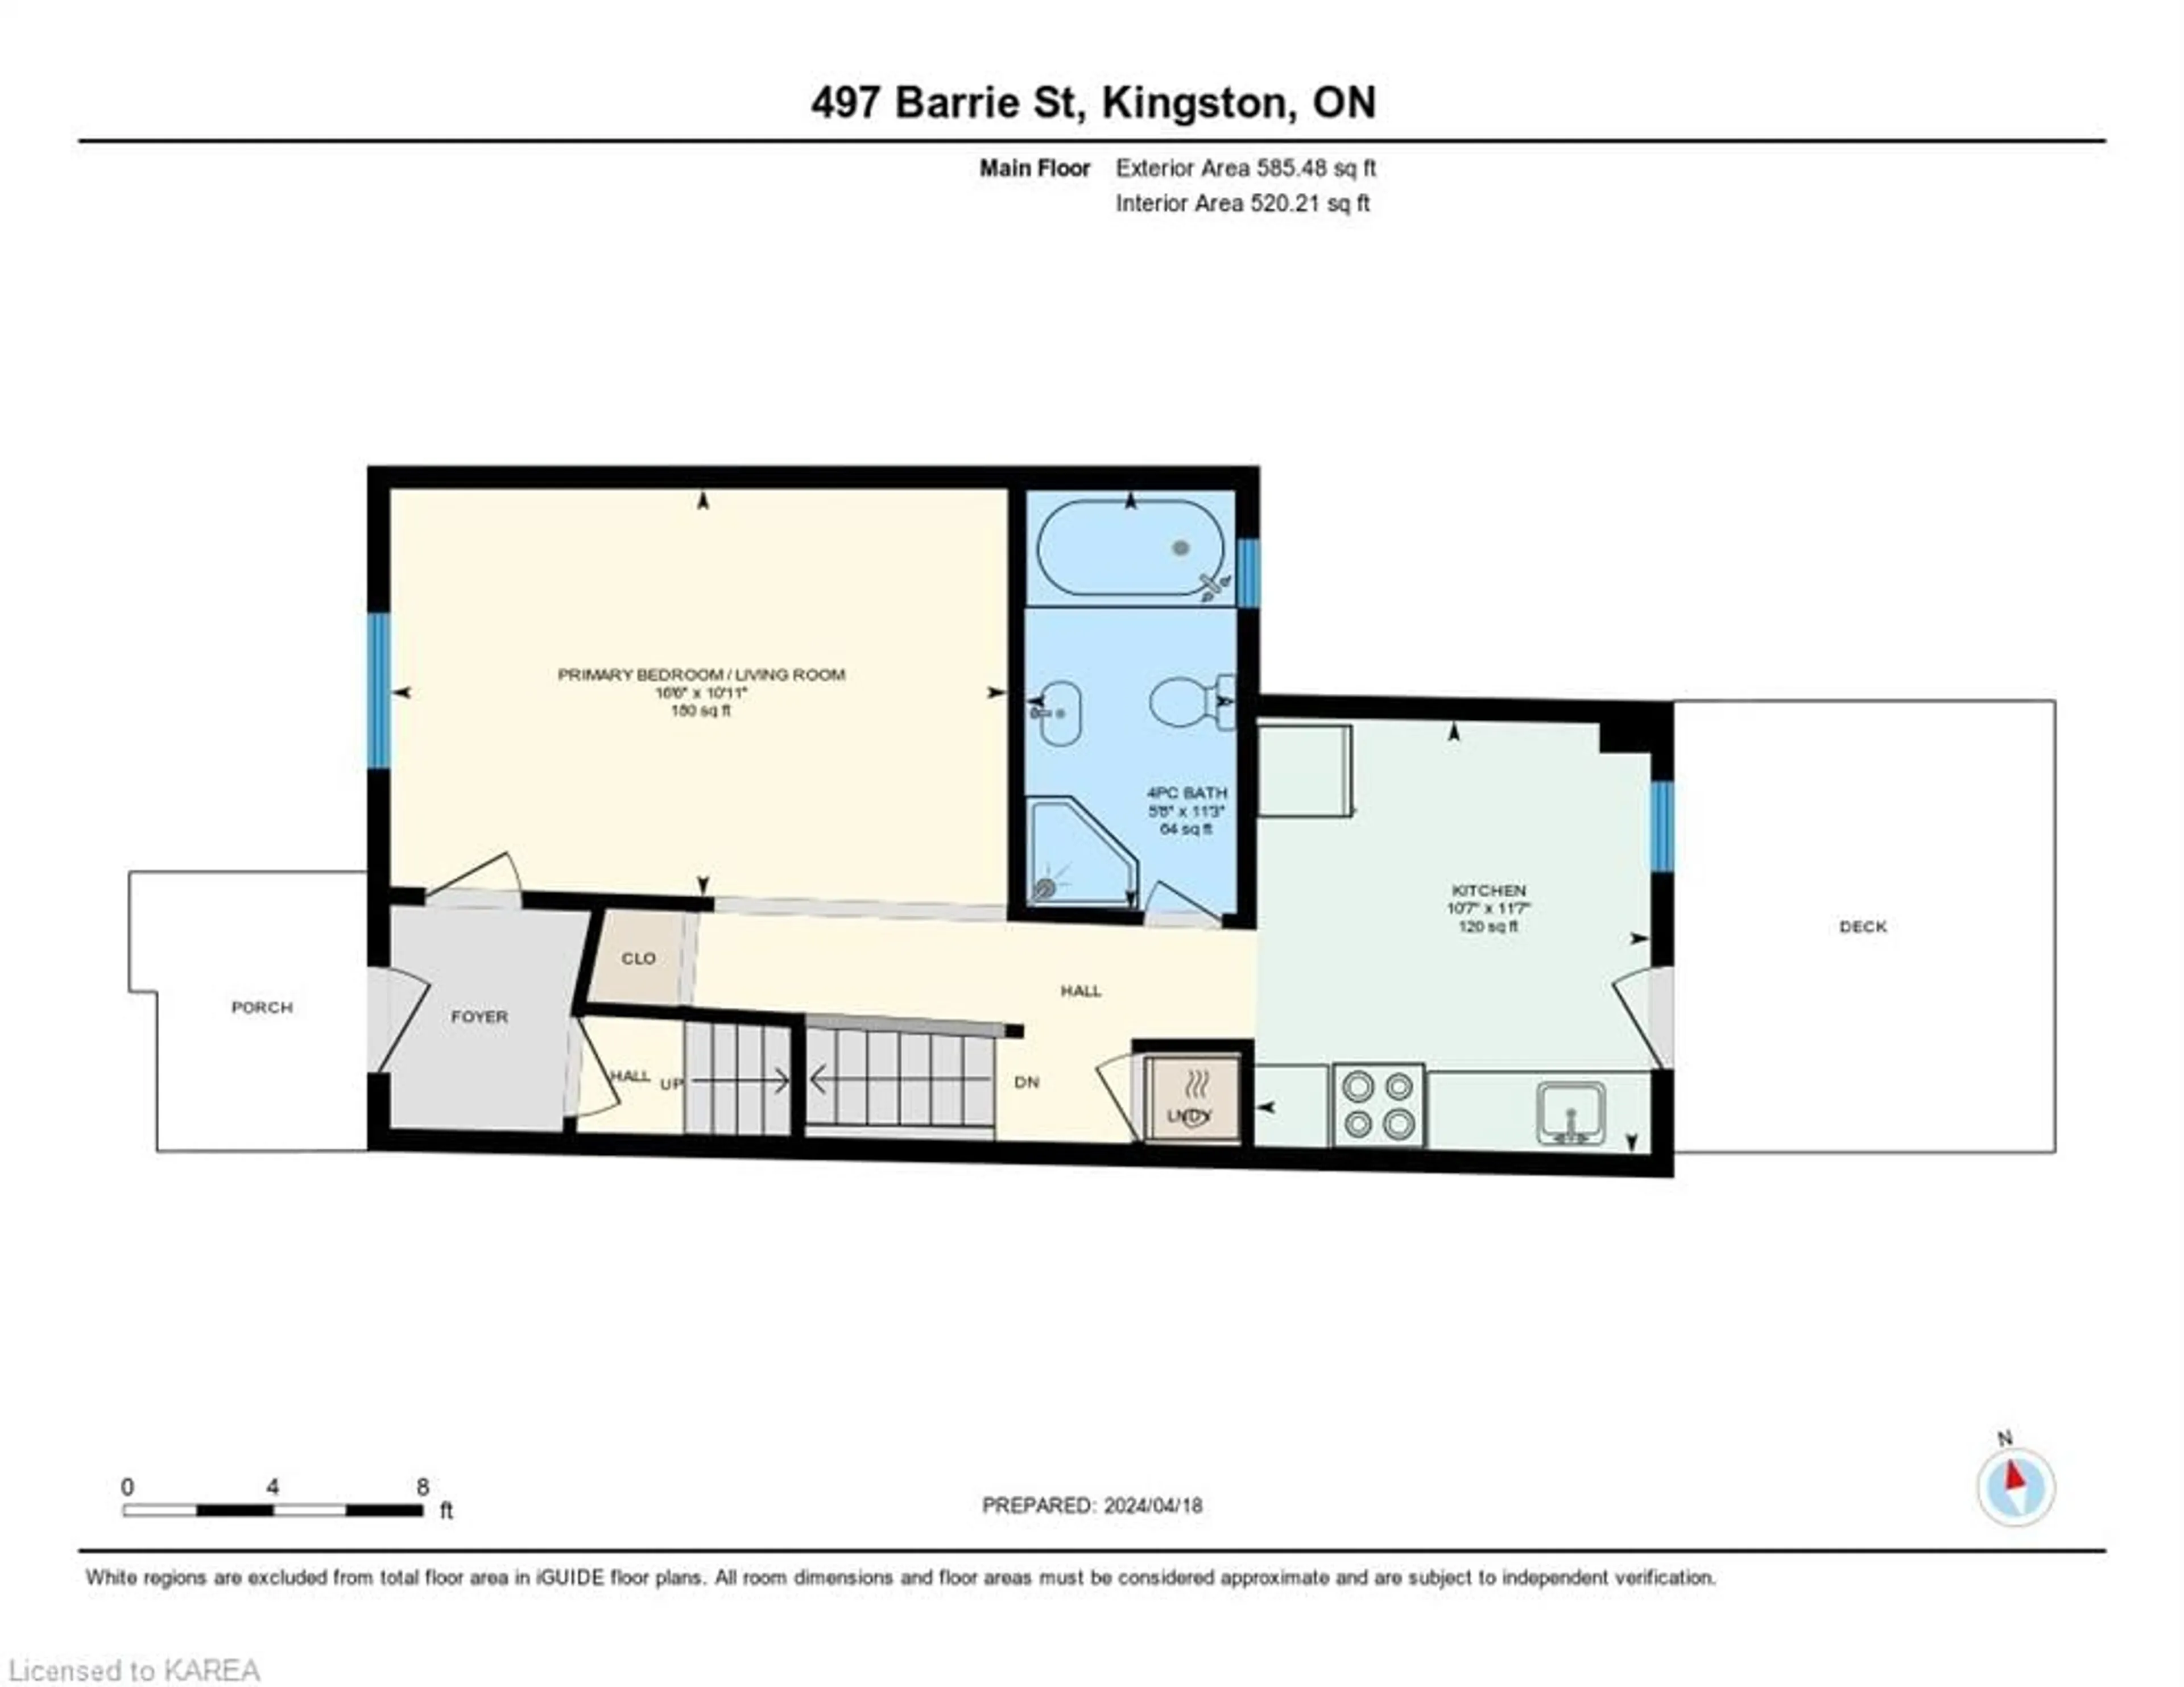 Floor plan for 497 Barrie St, Kingston Ontario K7K 3V4